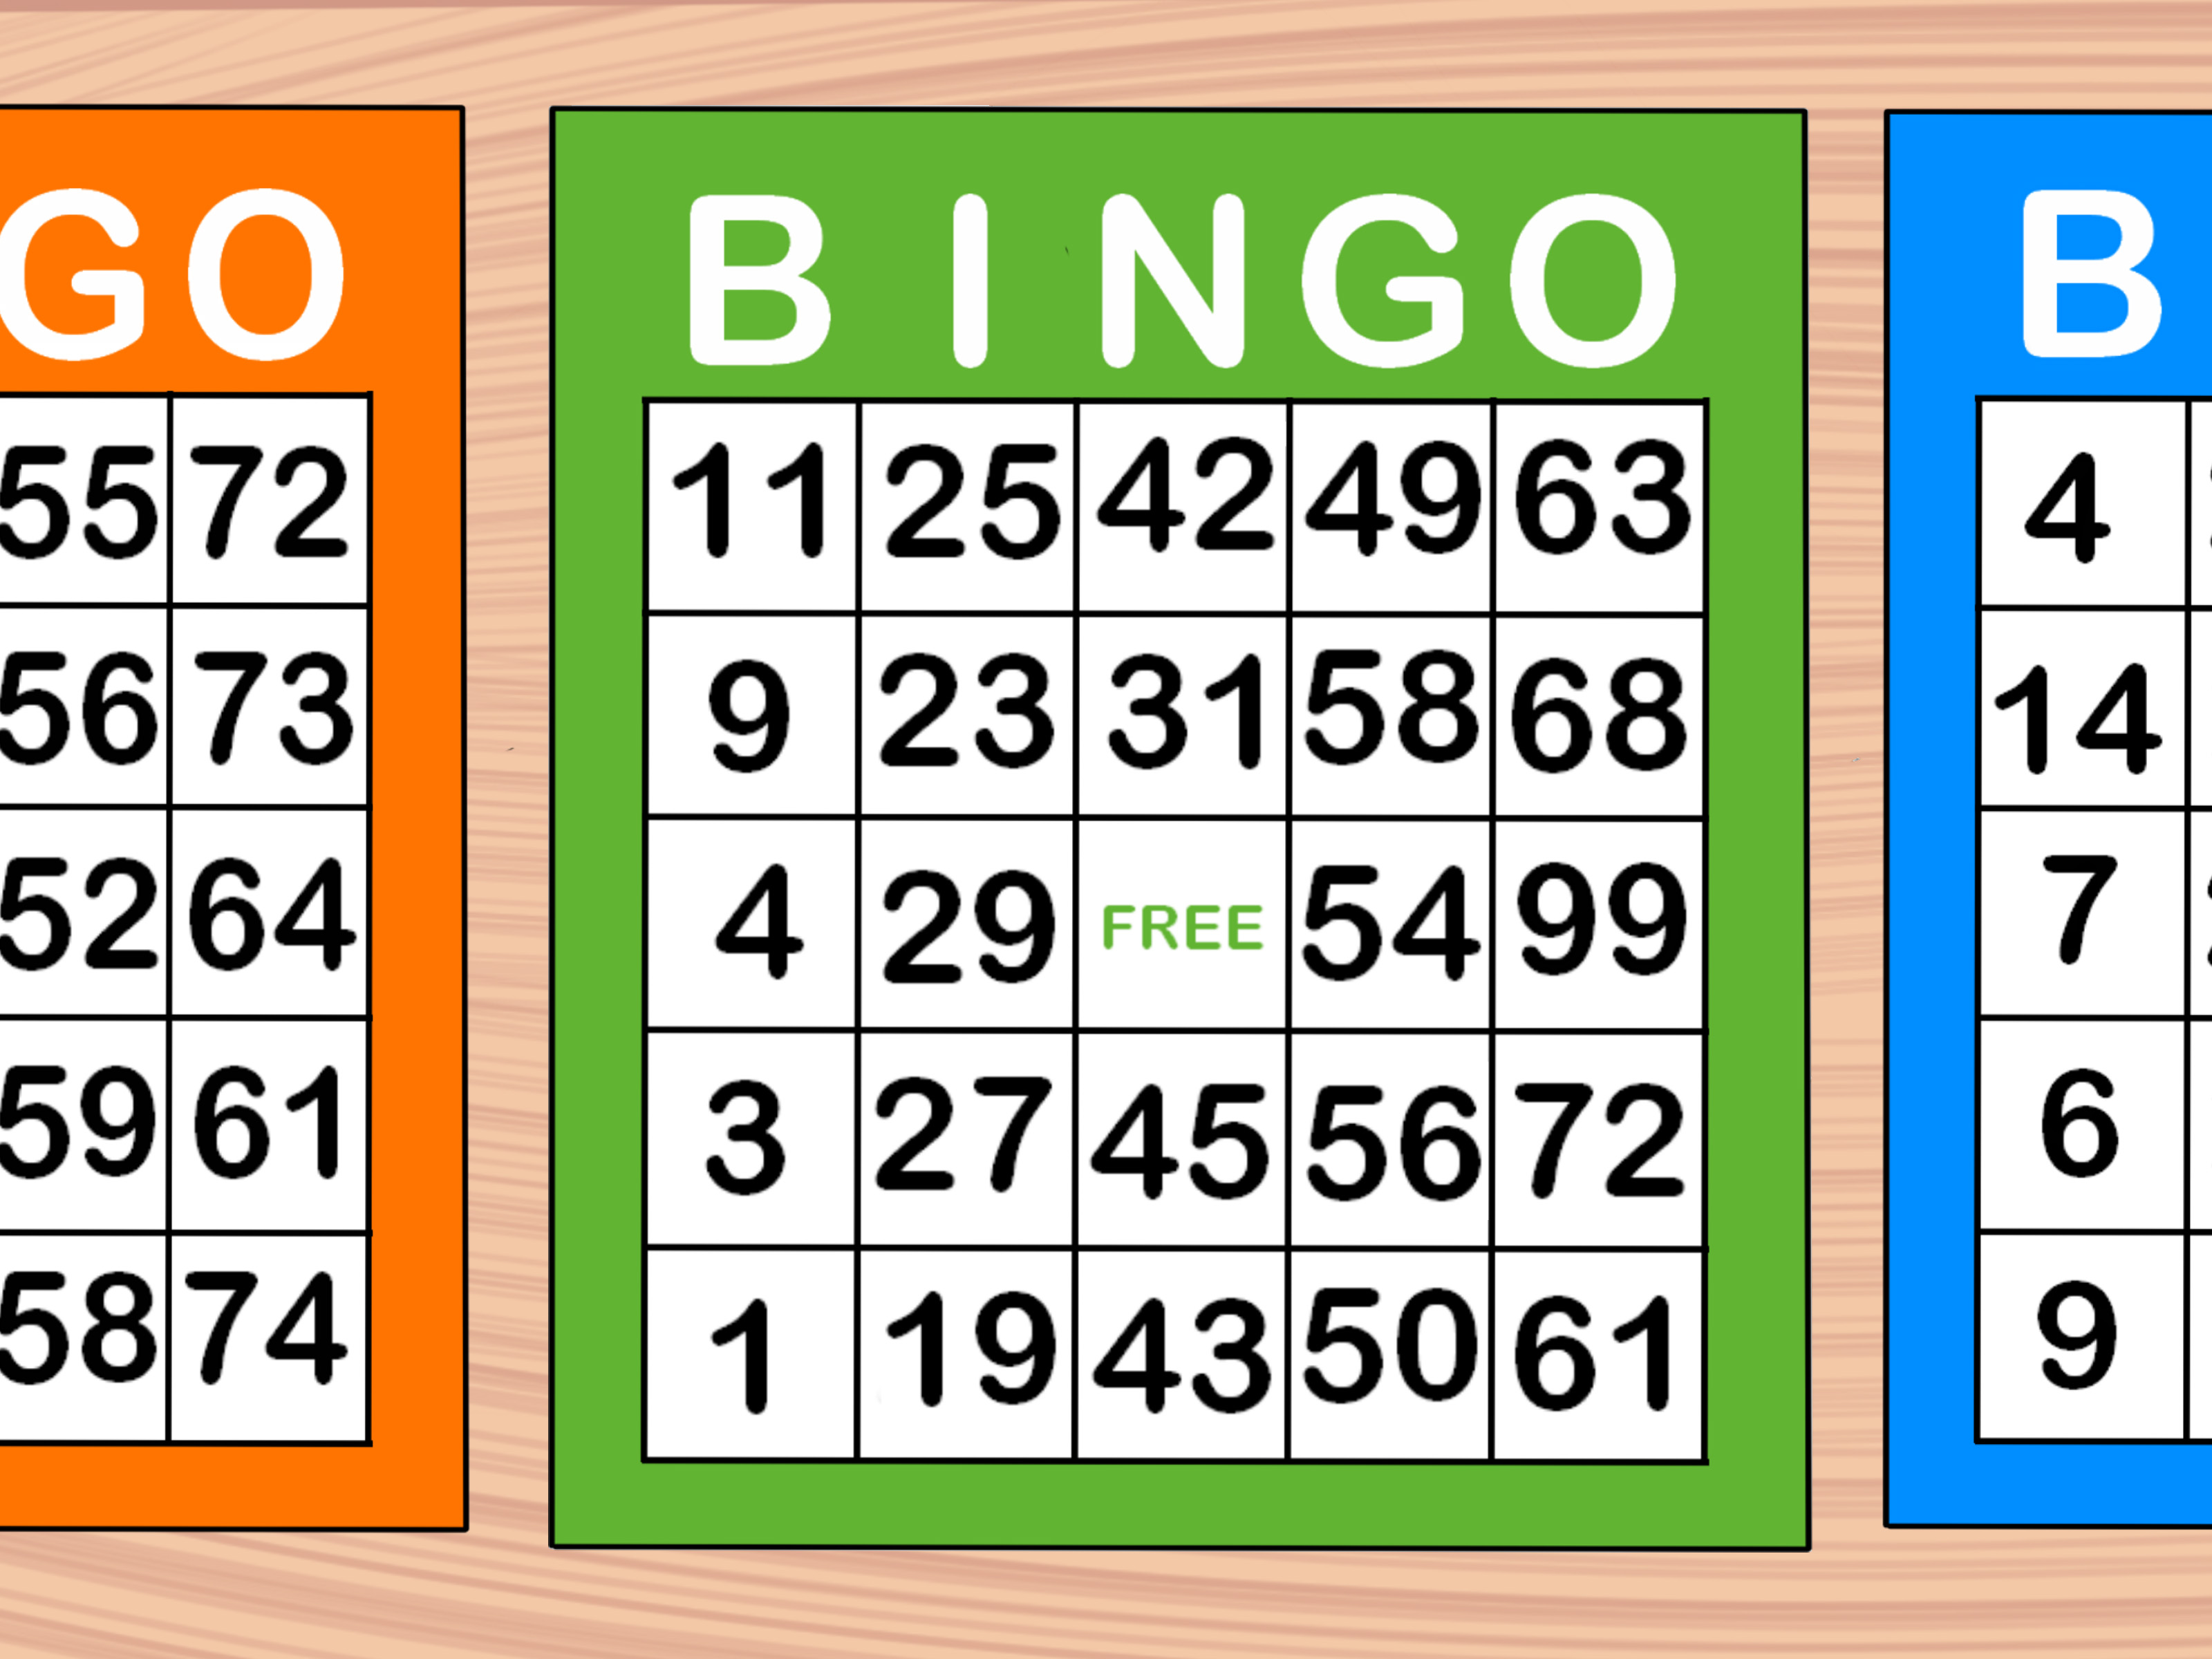 types-of-bingo-games-patterns-pin-on-bingo-patterns-both-avid-bingo